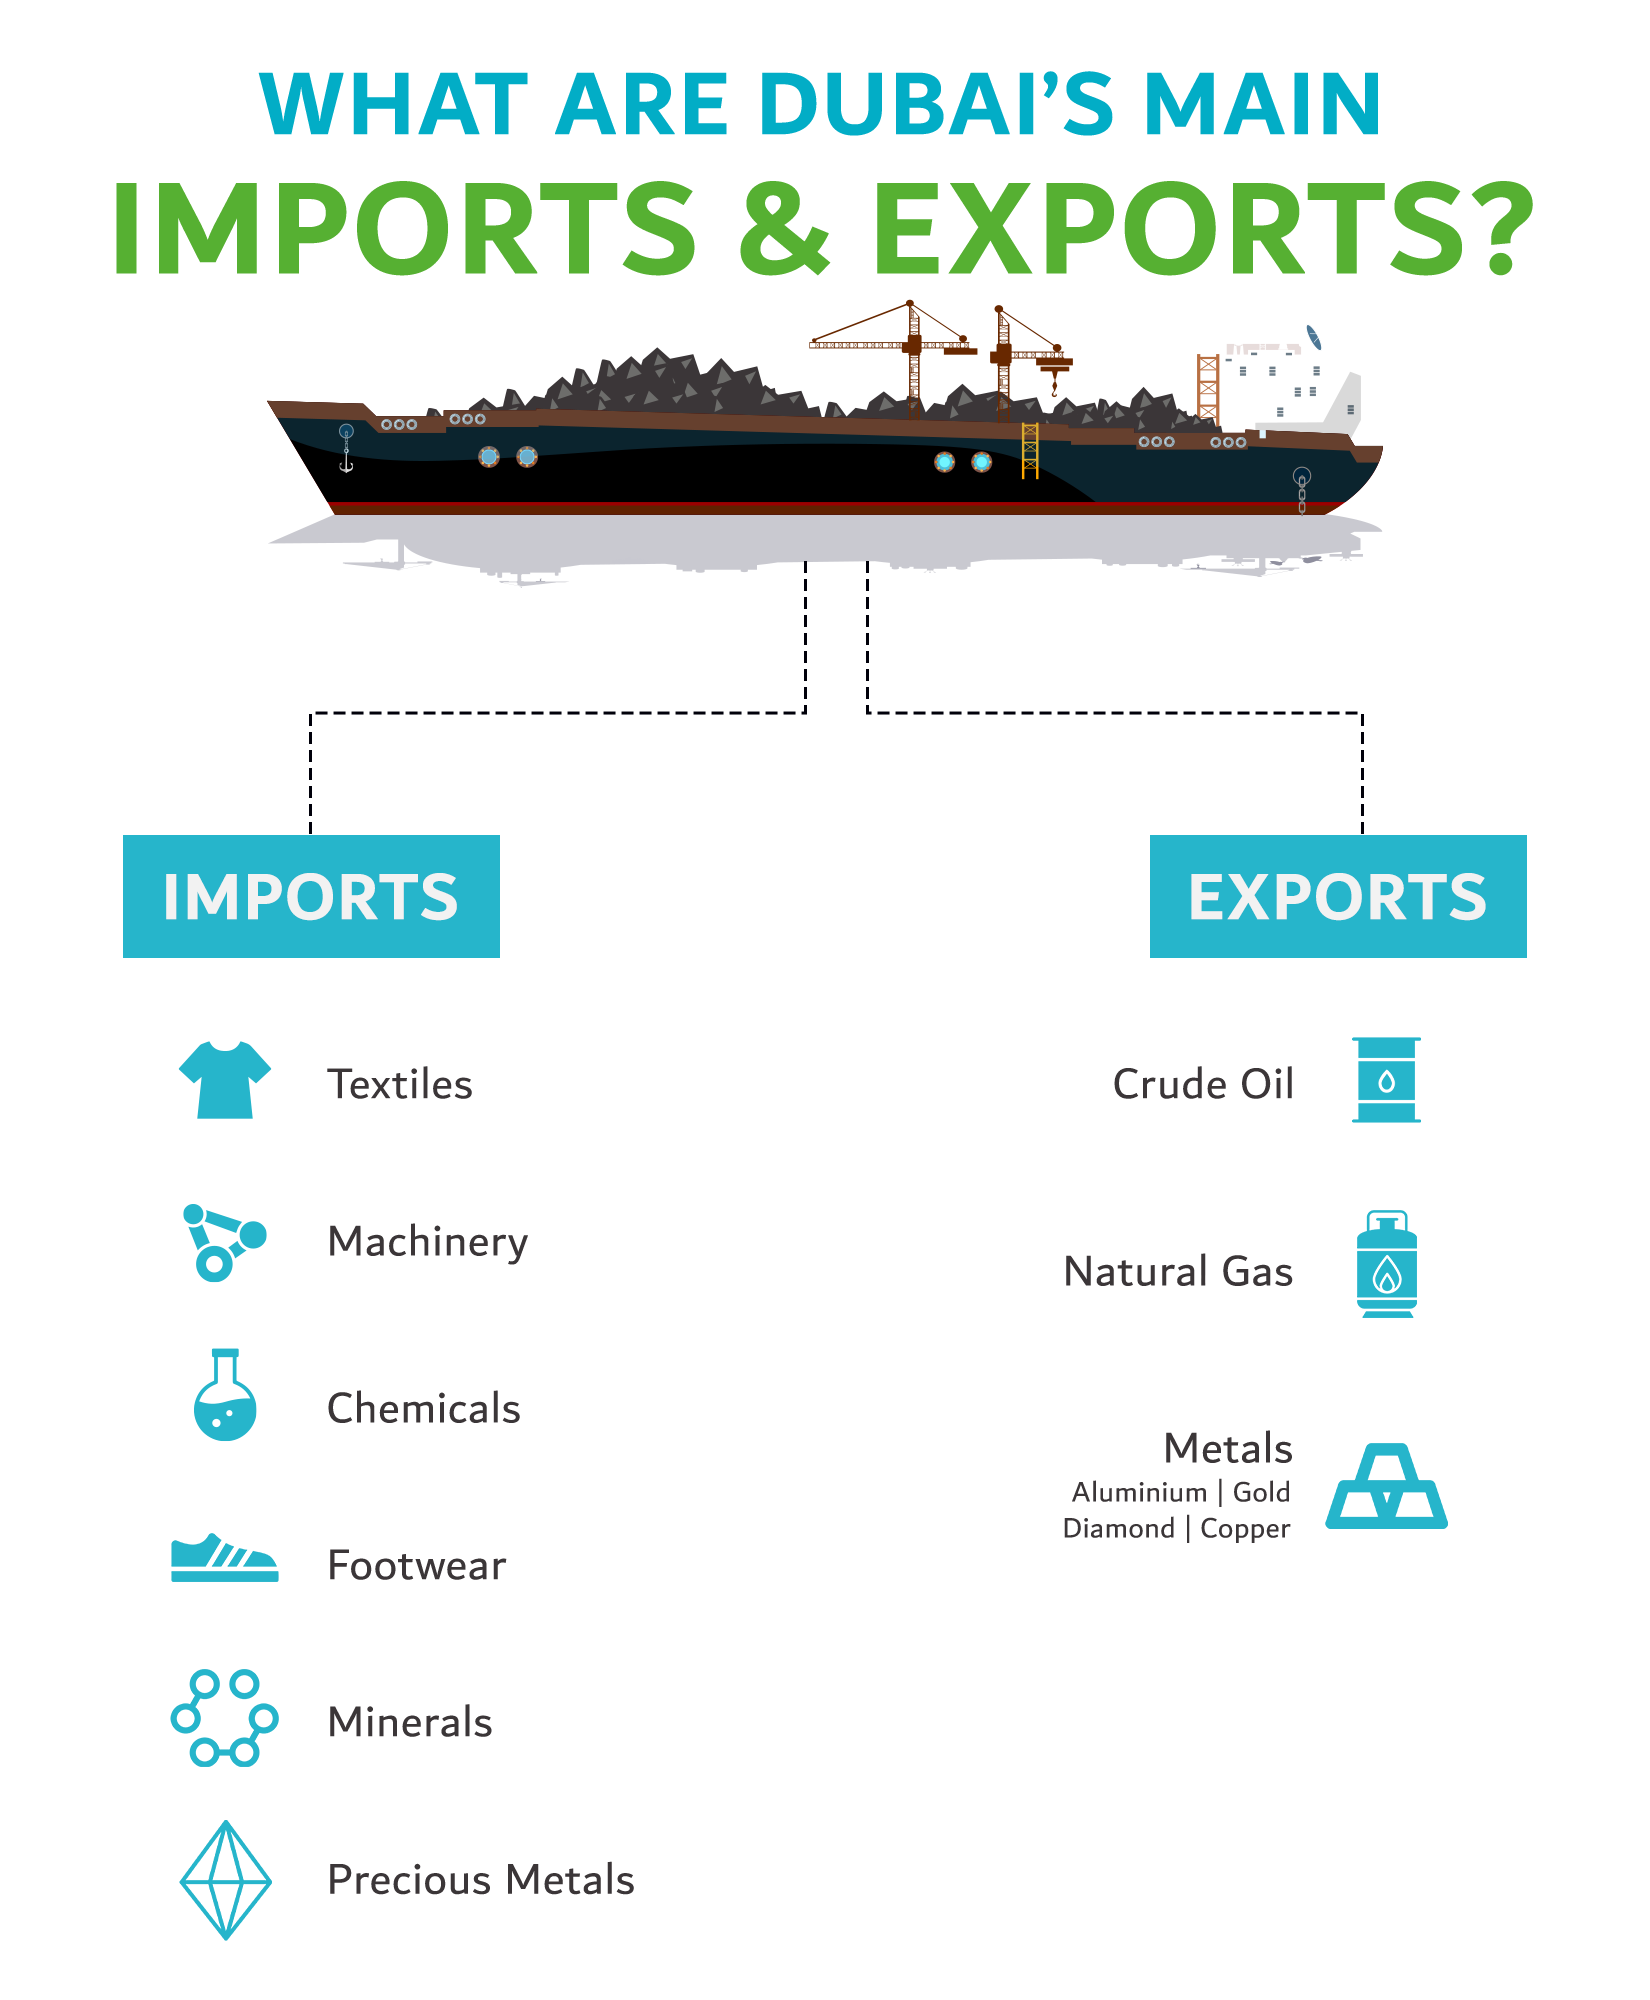 Dubai's main imports and exports